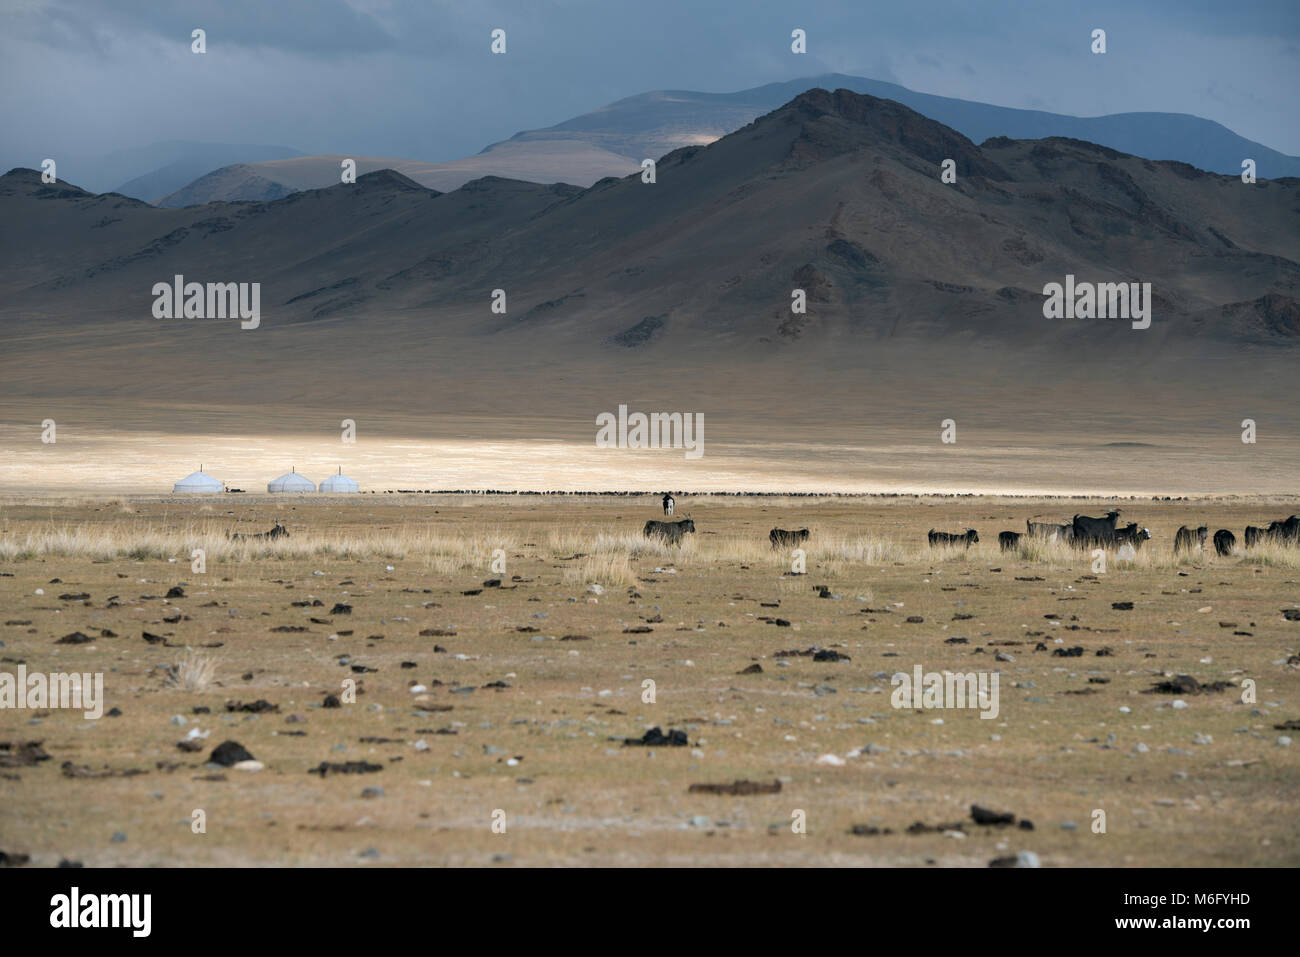 Un allevamento di bestiame al pascolo accanto a tre il kazako gers (yurta). Montagne di Altai, Mongolia occidentale. Foto Stock